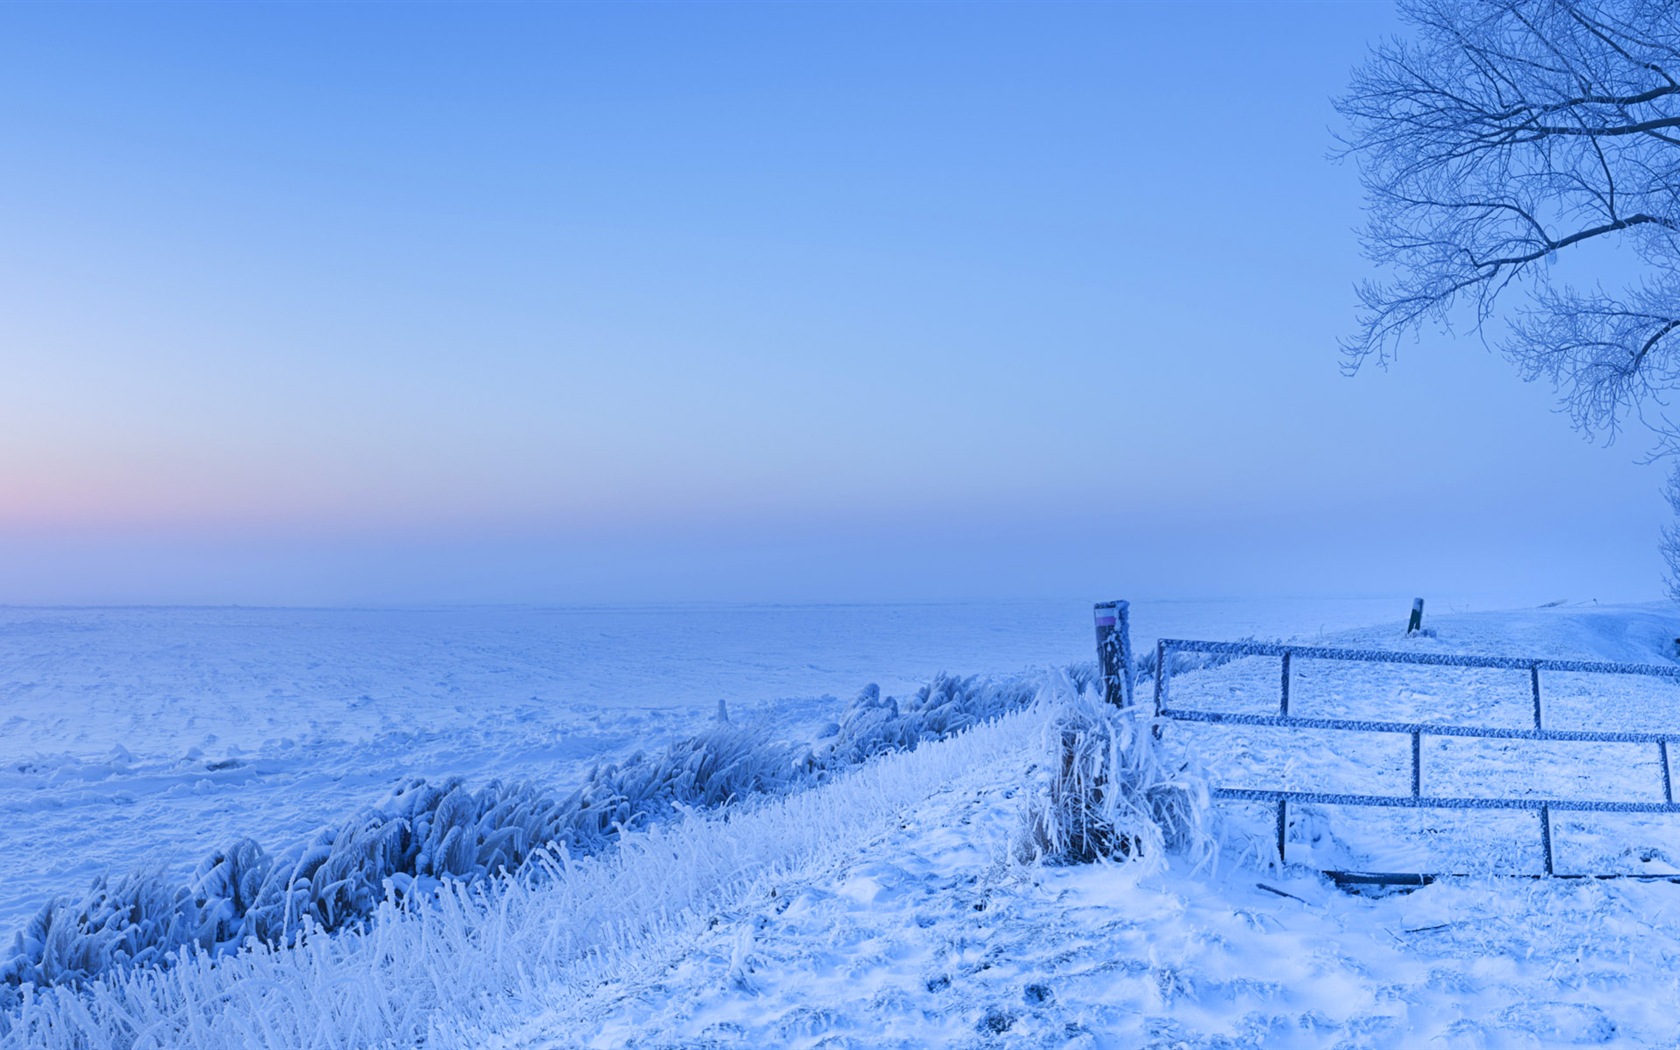 Belle neige froide d'hiver, de Windows 8 fonds d'écran widescreen panoramique #2 - 1680x1050